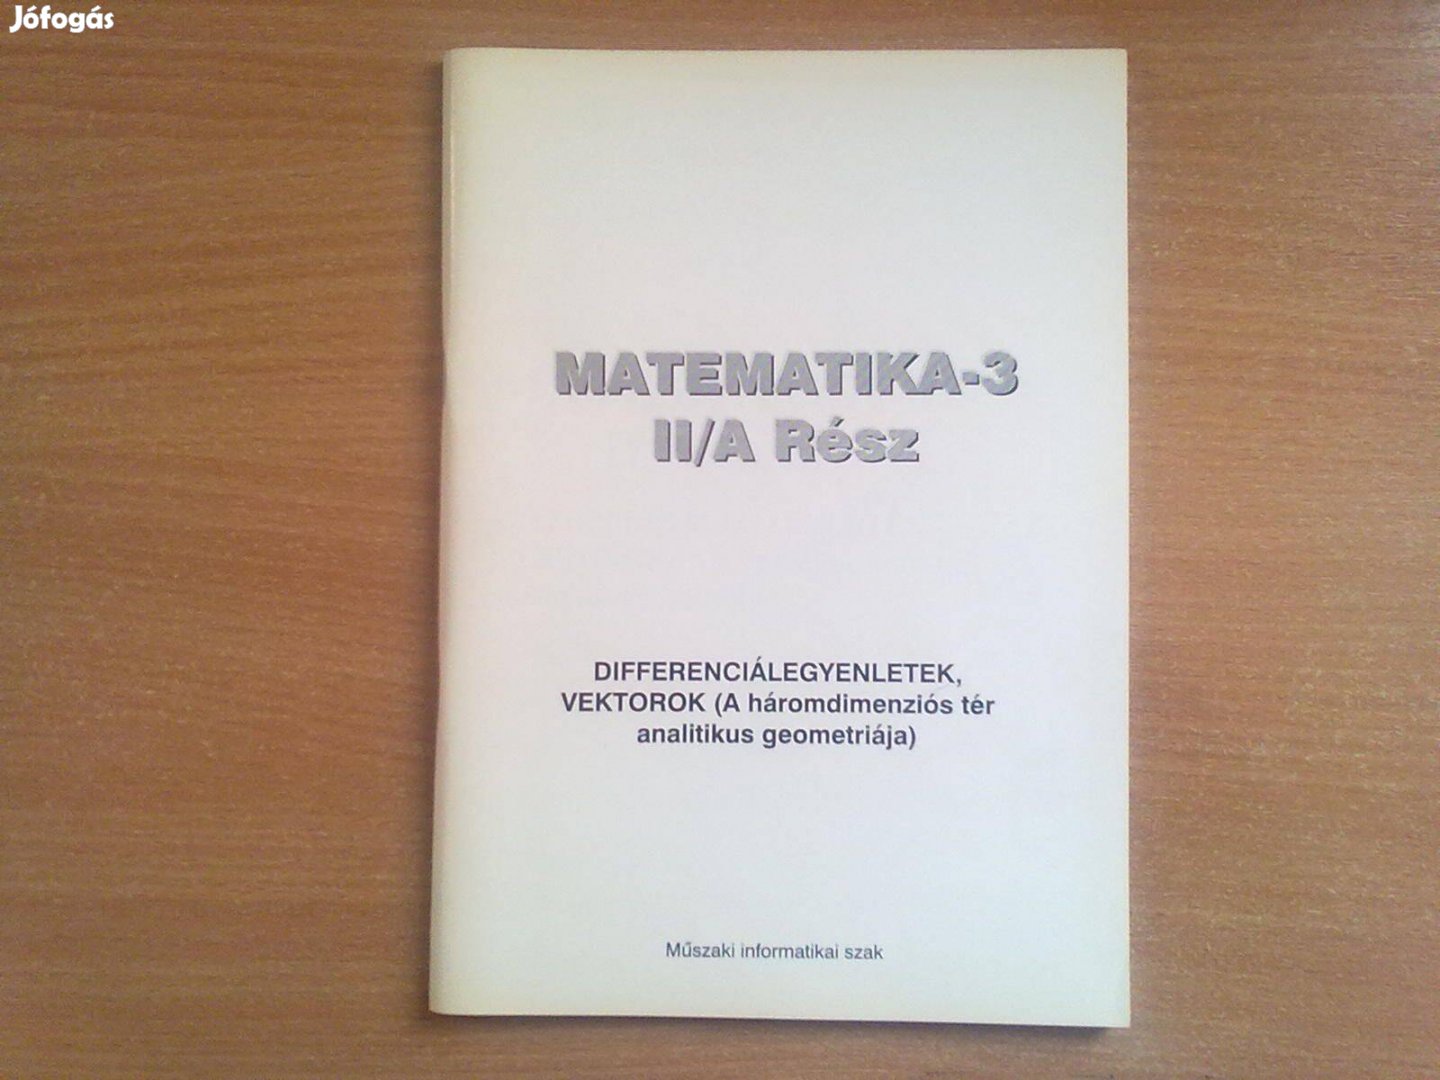 Matematika-3 II/A Rész (Differenciálegyenletek, vektorok)